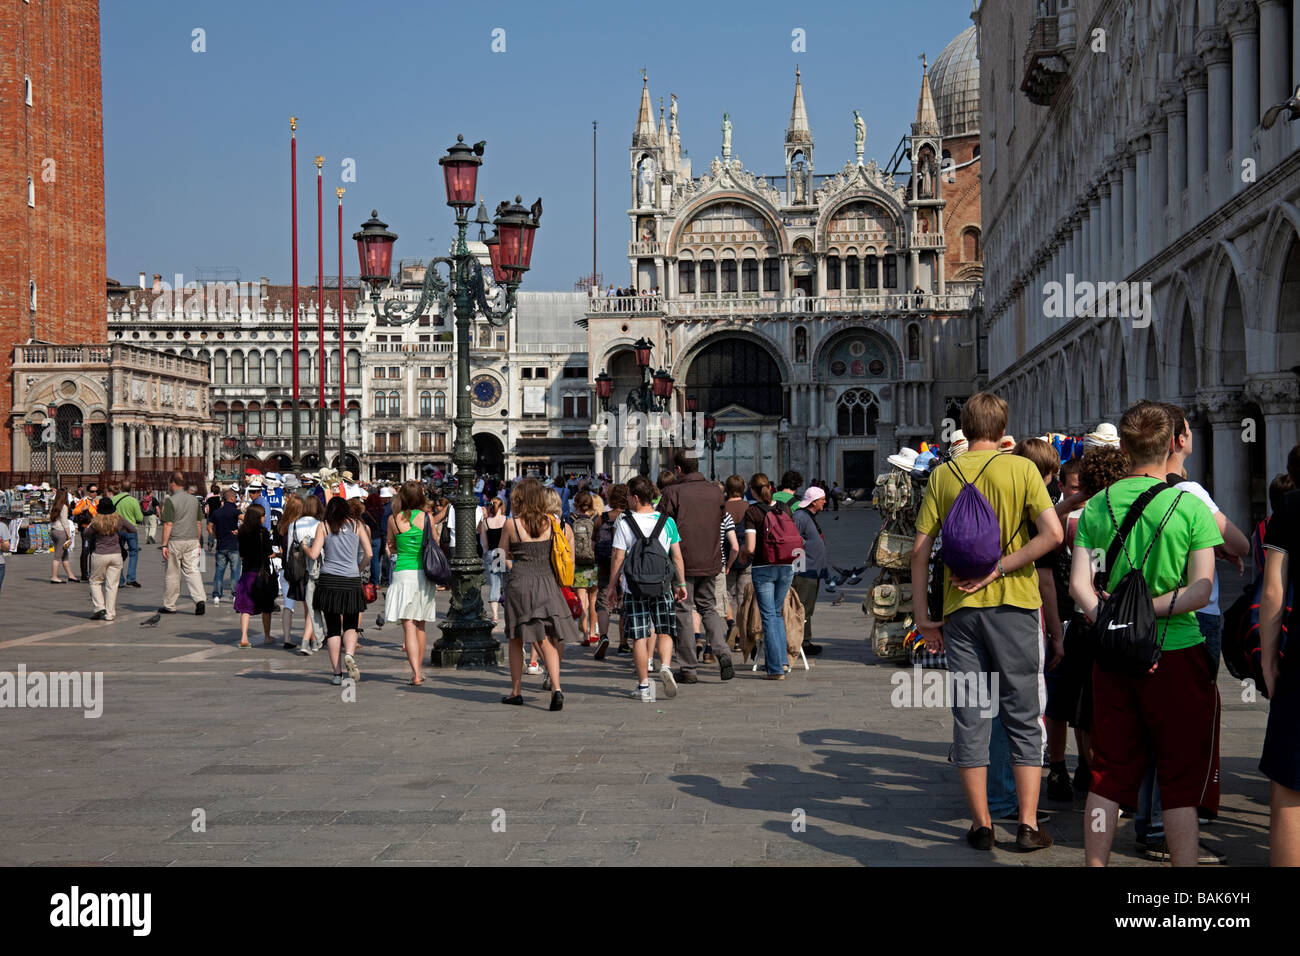 Piazetta 'Piazza San Marco' Venise Italie tourisme touristiques Banque D'Images